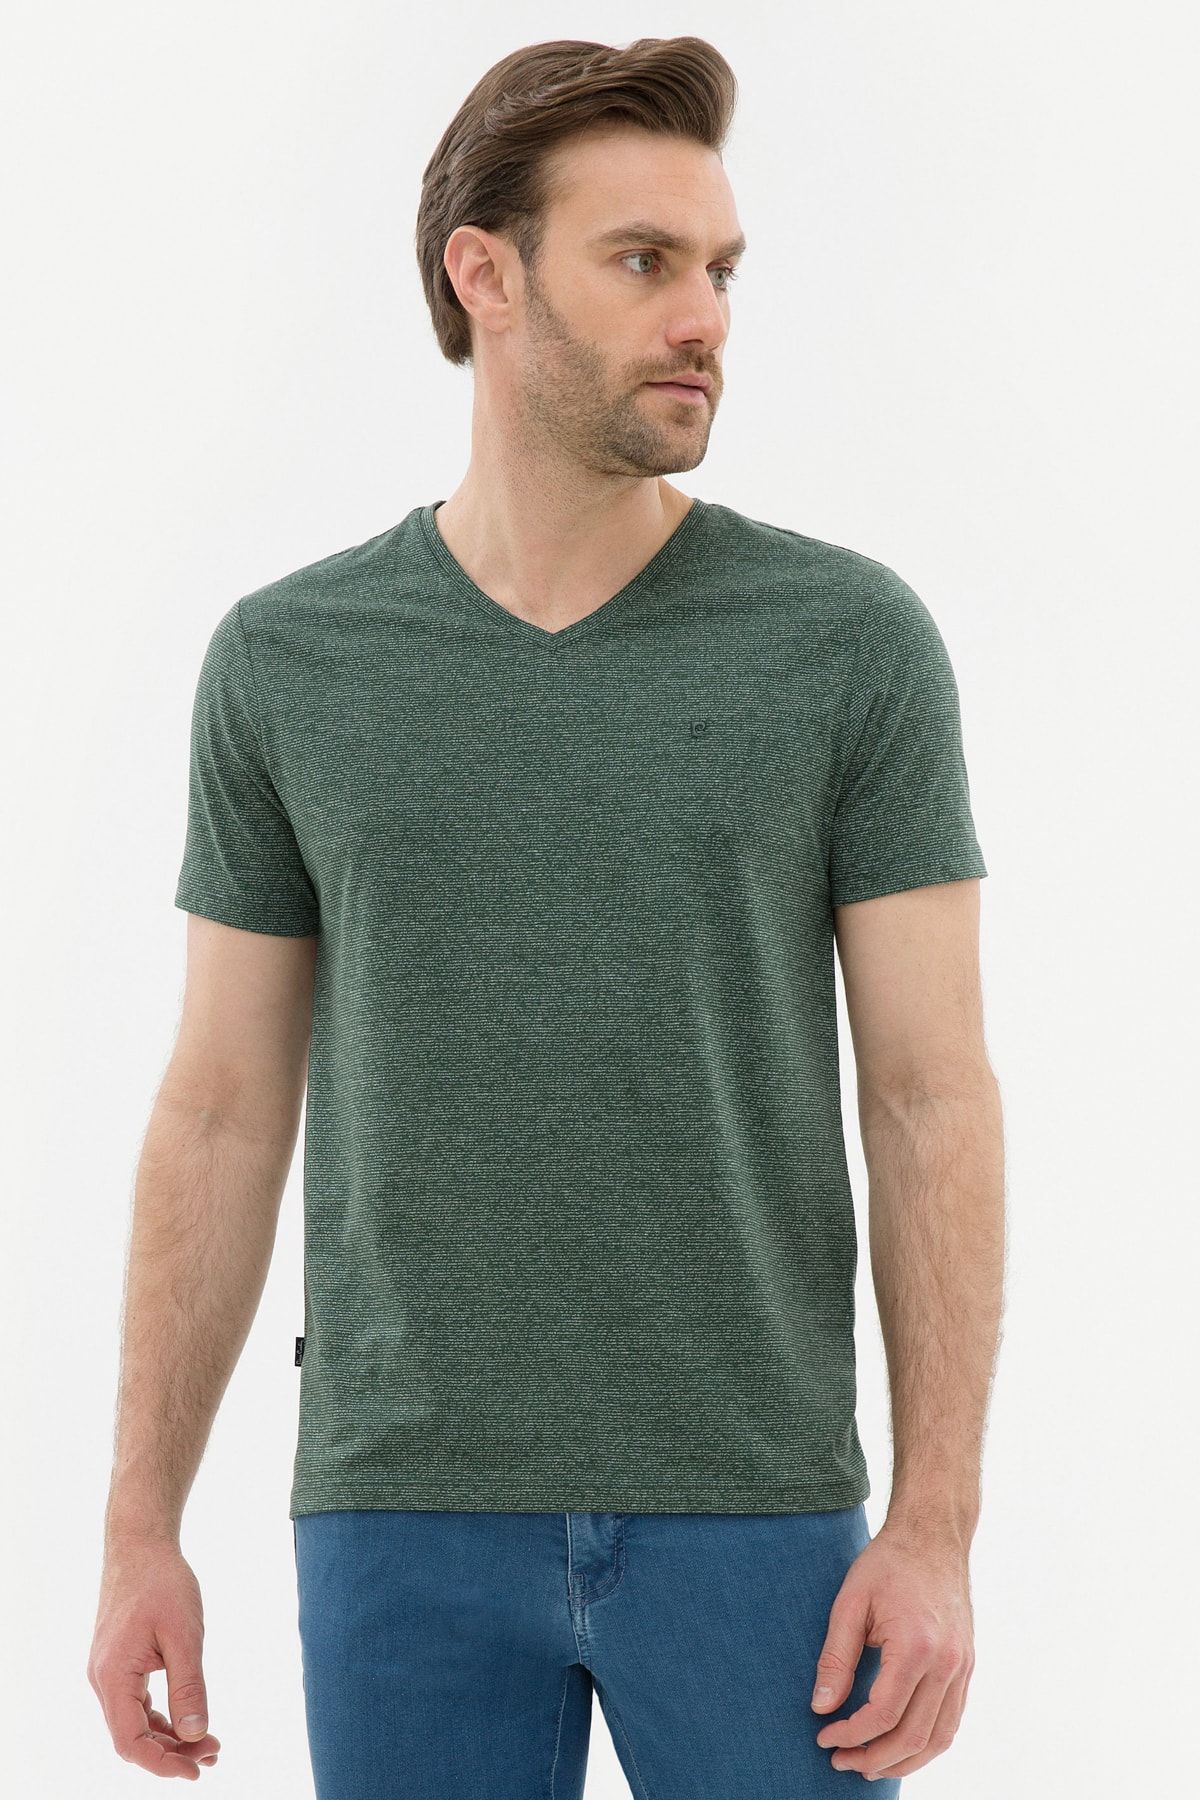 Pierre Cardin Erkek Koyu Yeşil Slim Fit V Yaka T-Shirt